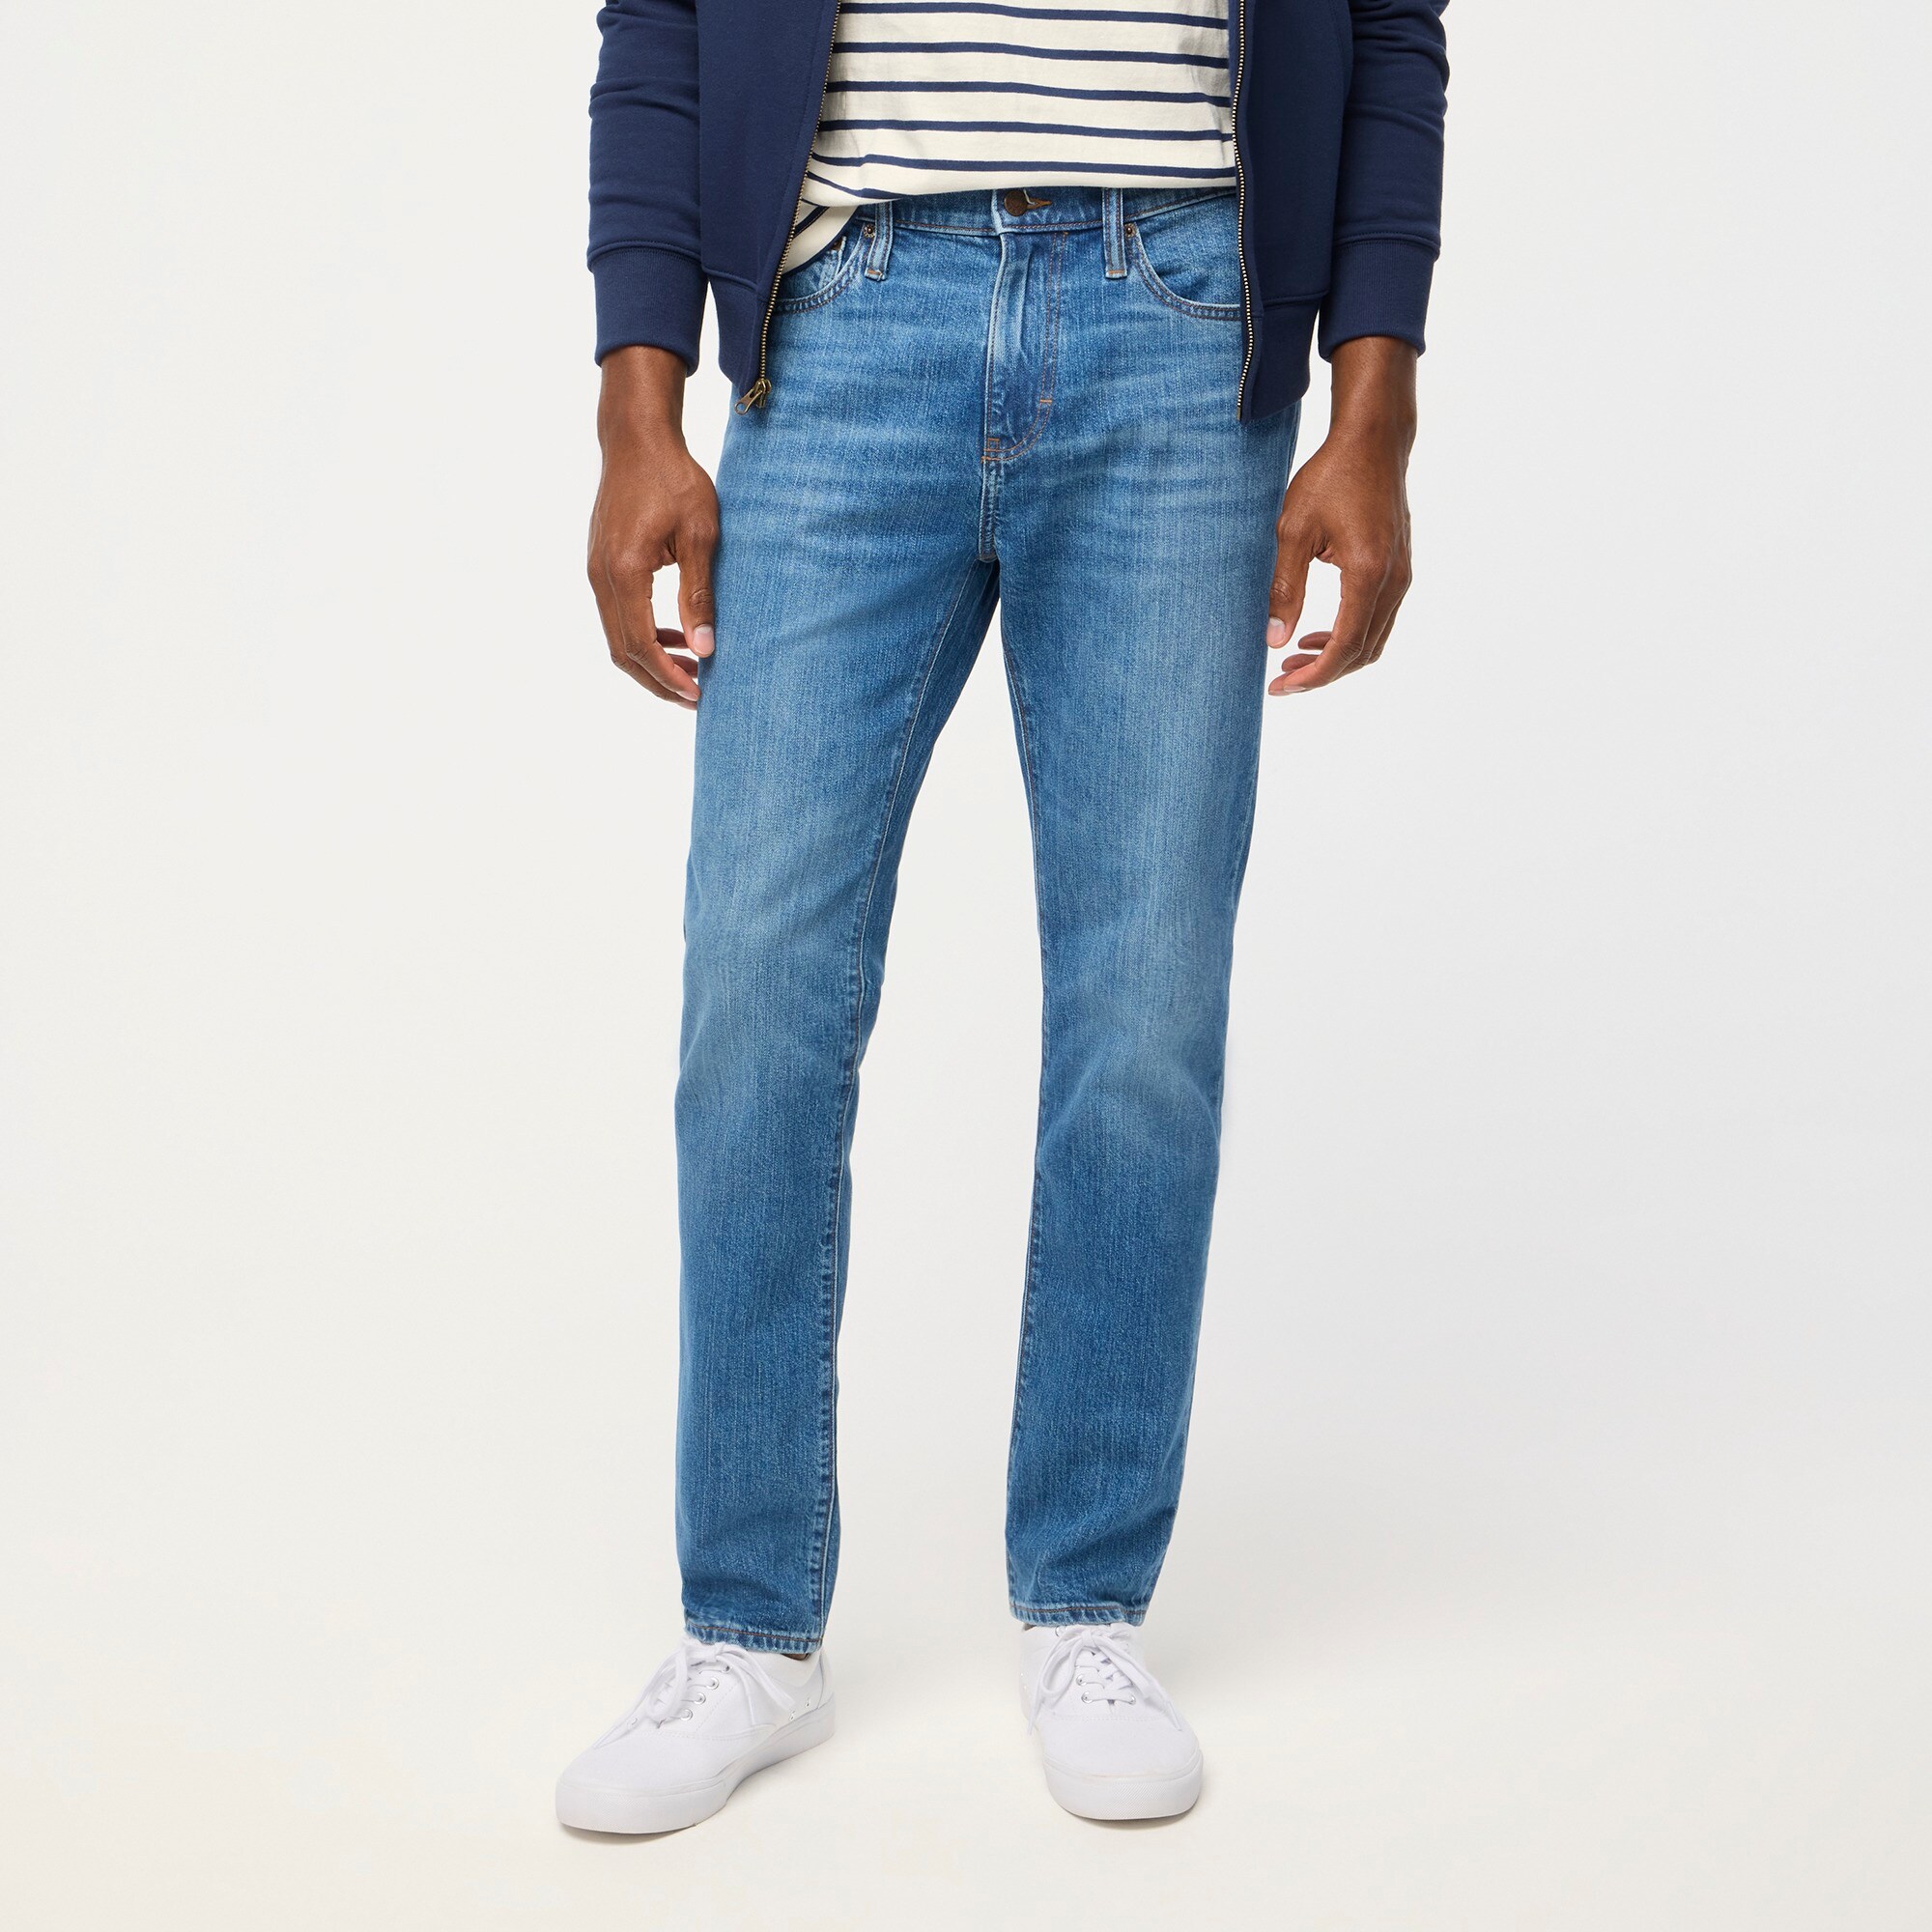 mens Slim-fit jean in vintage flex